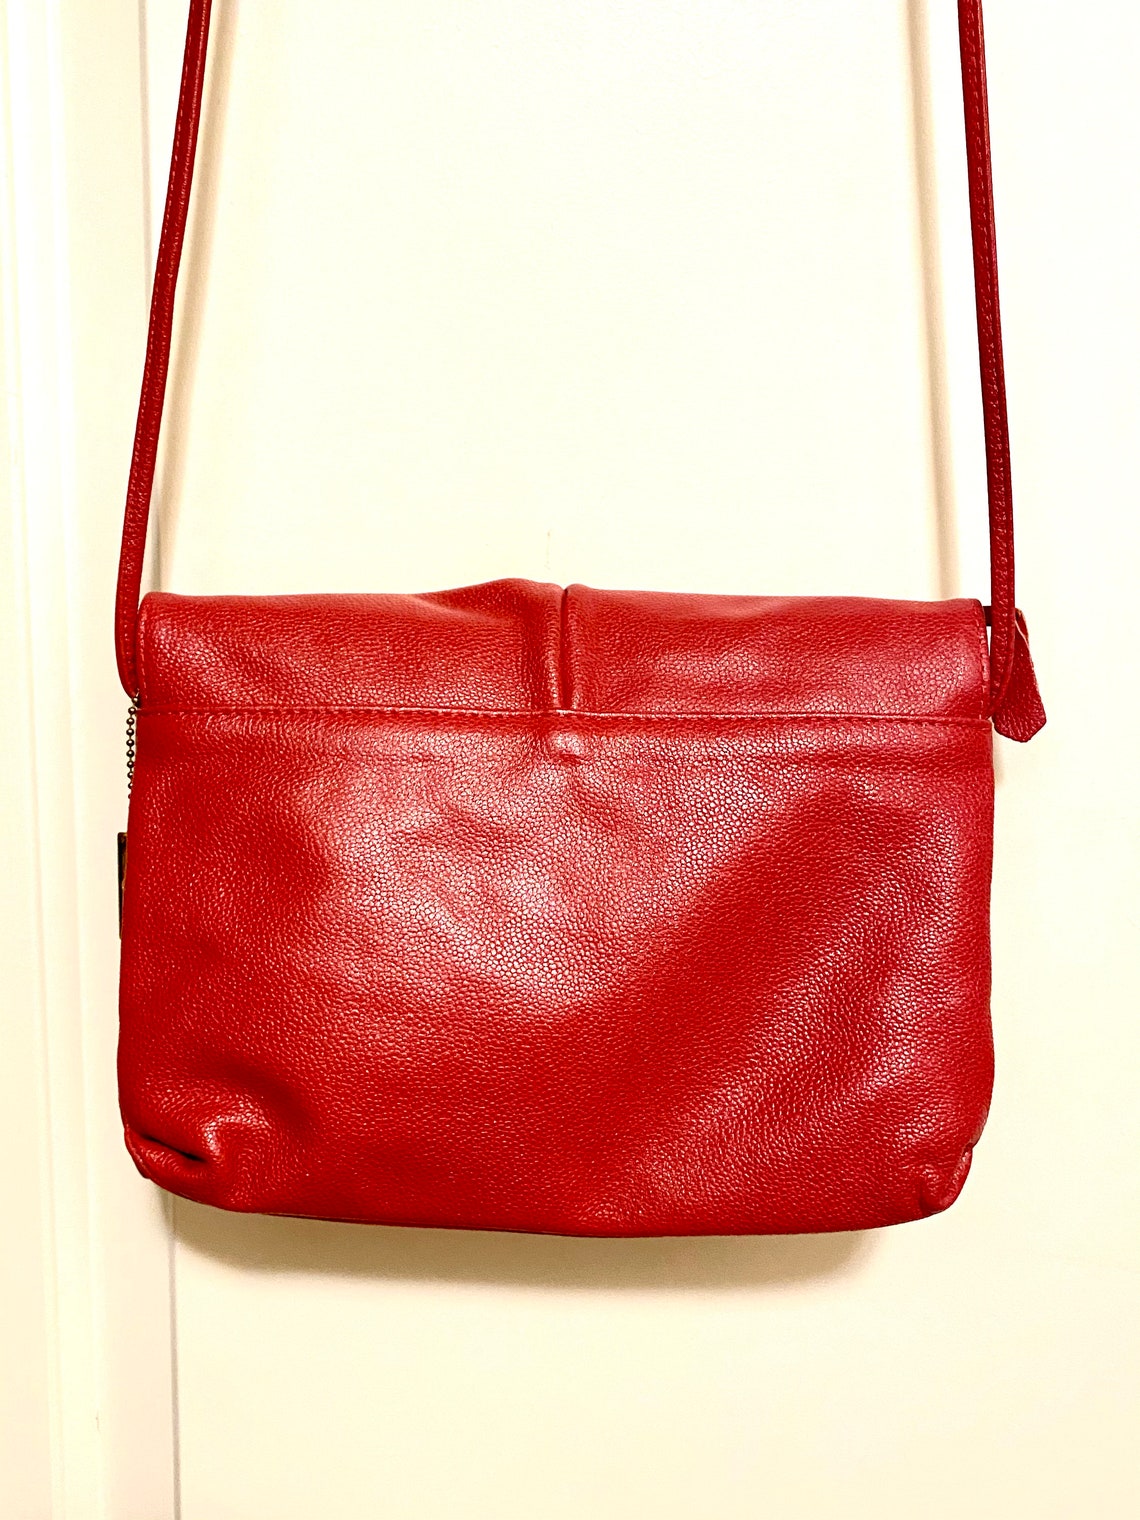 Vintage Letisse Red Leather Crossbody Bag | Etsy